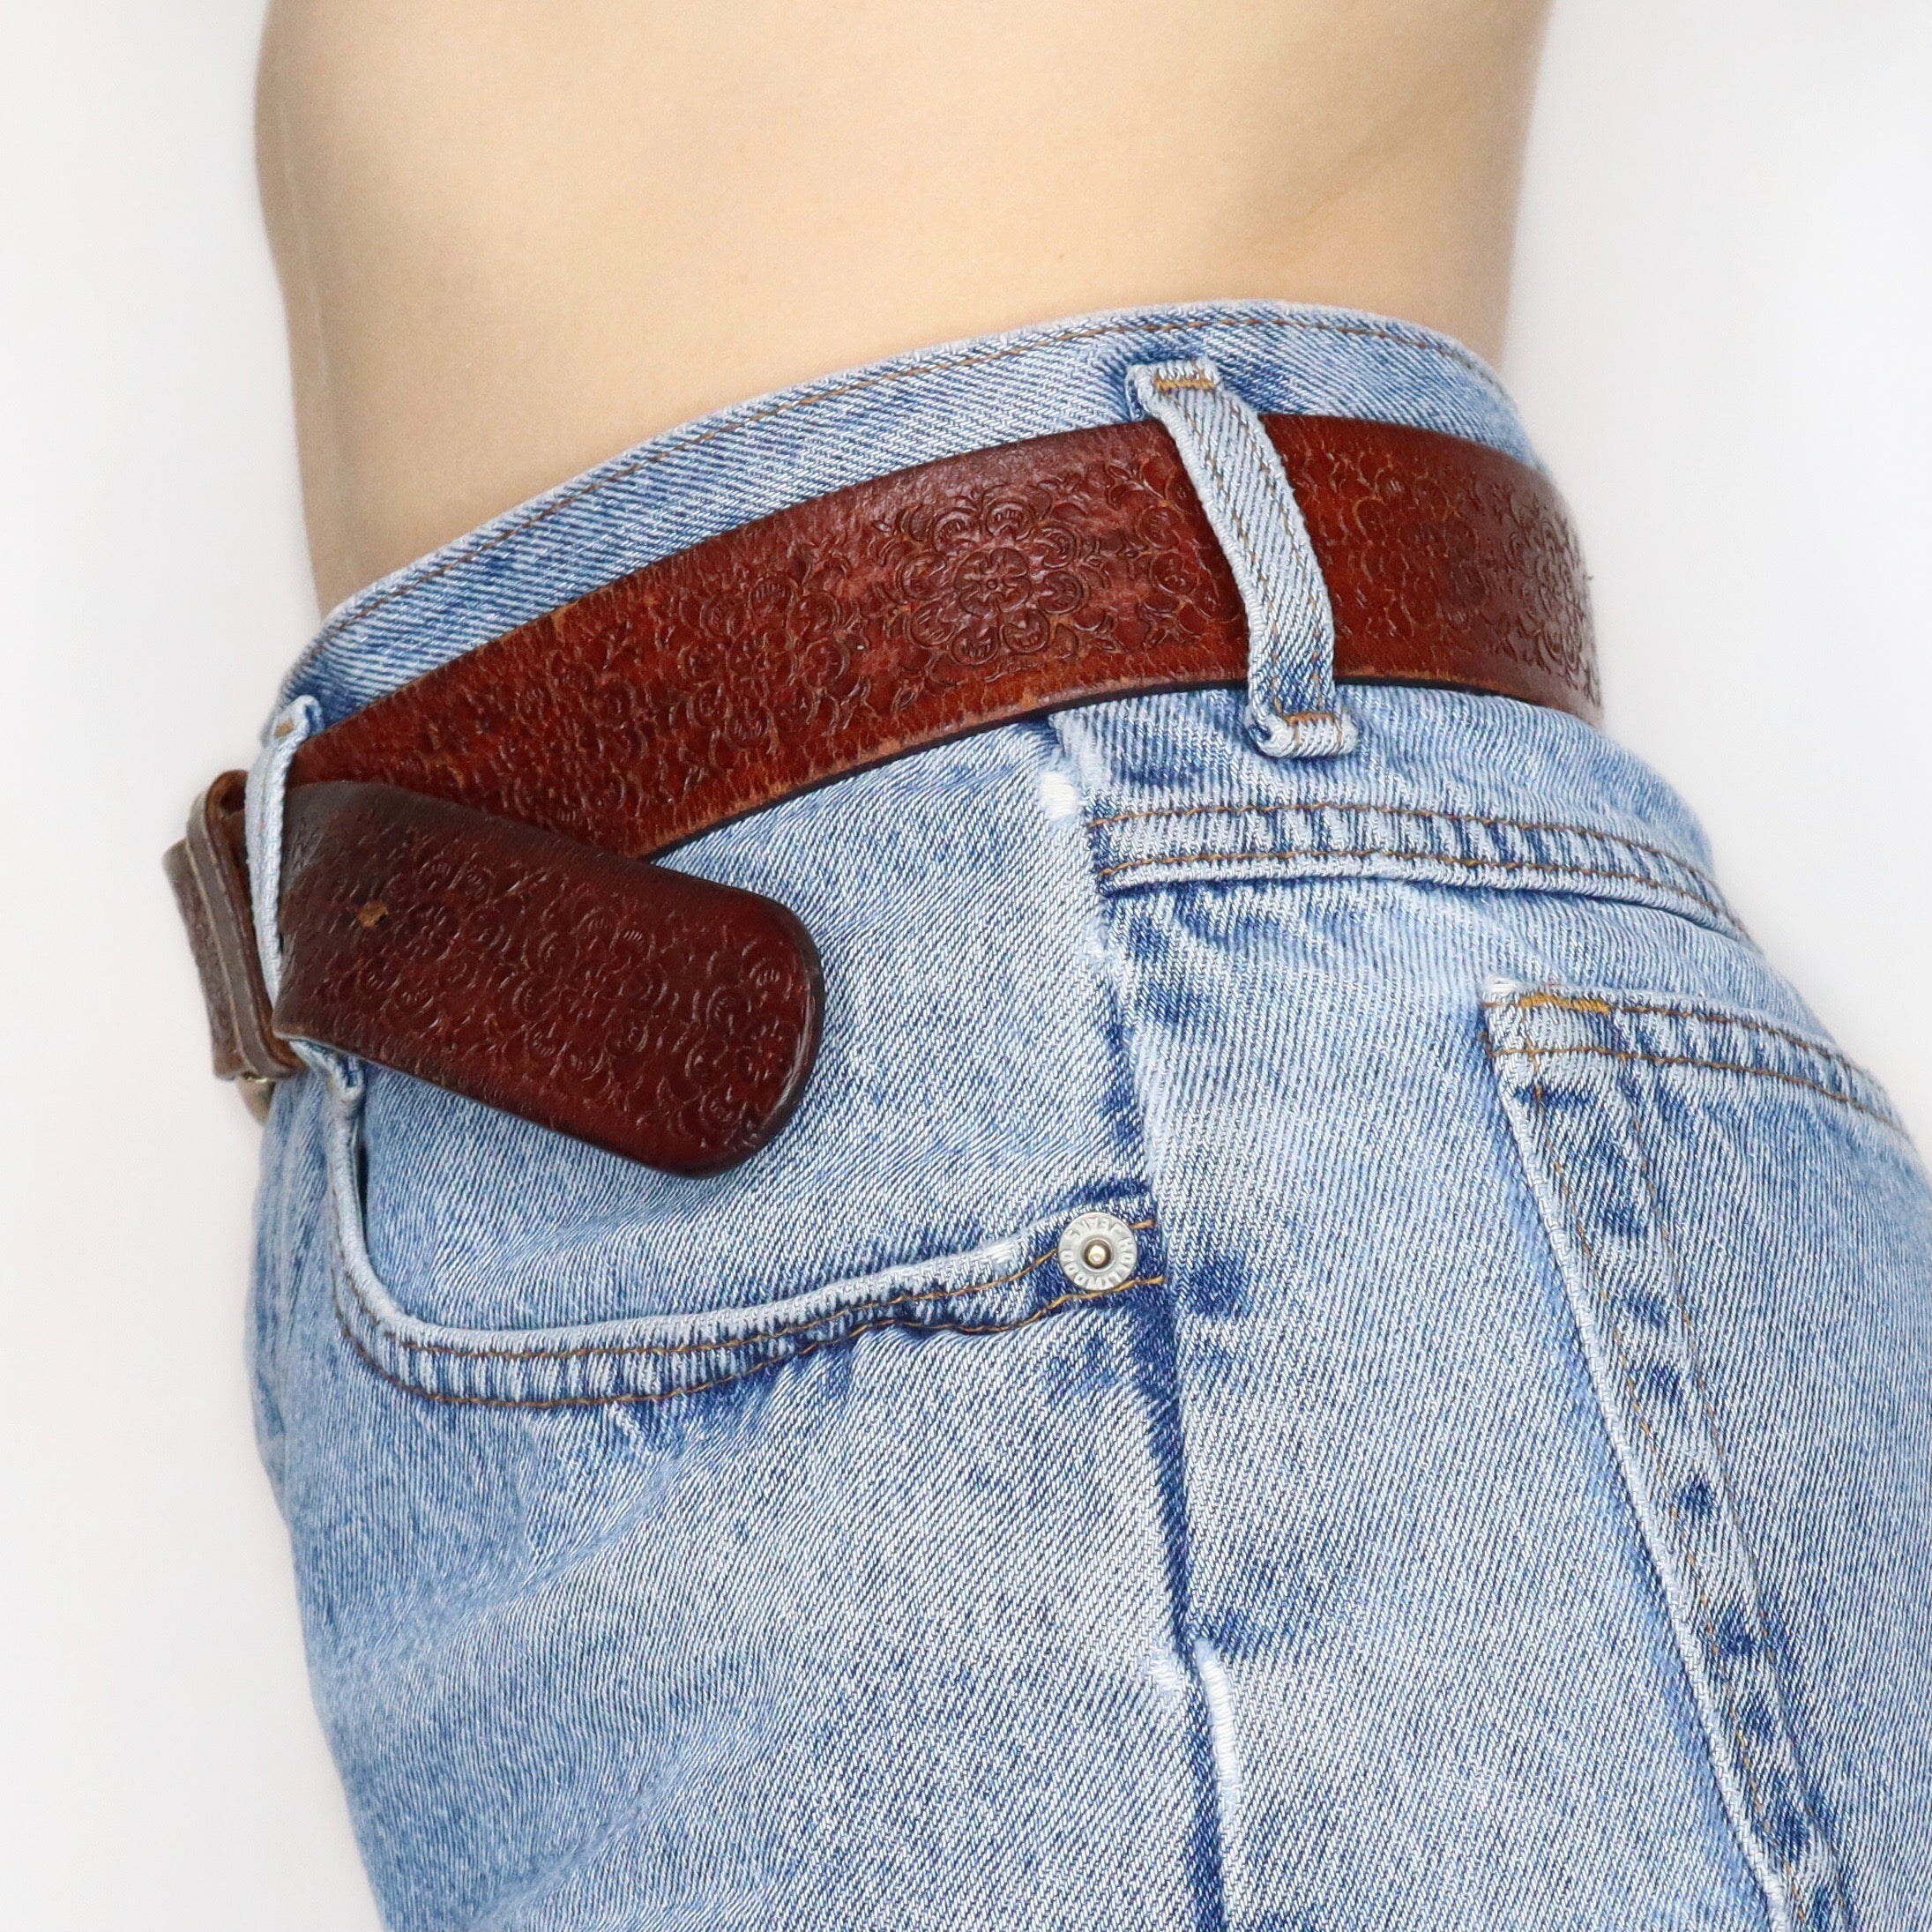 Brown Leather Belt - Imber Vintage